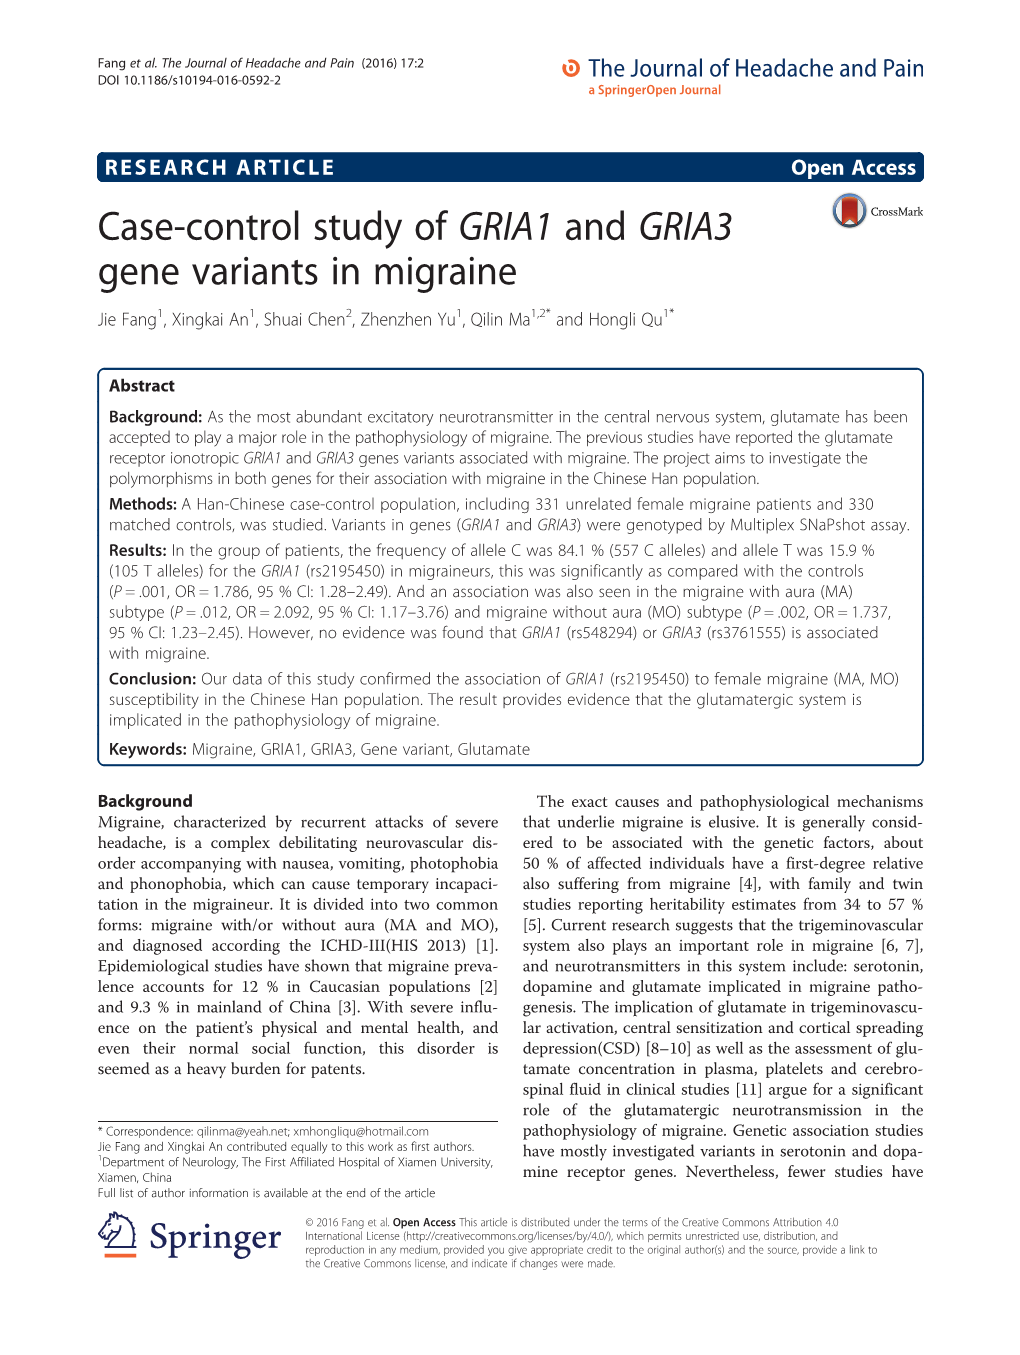 Case-Control Study of GRIA1 and GRIA3 Gene Variants in Migraine Jie Fang1, Xingkai An1, Shuai Chen2, Zhenzhen Yu1, Qilin Ma1,2* and Hongli Qu1*